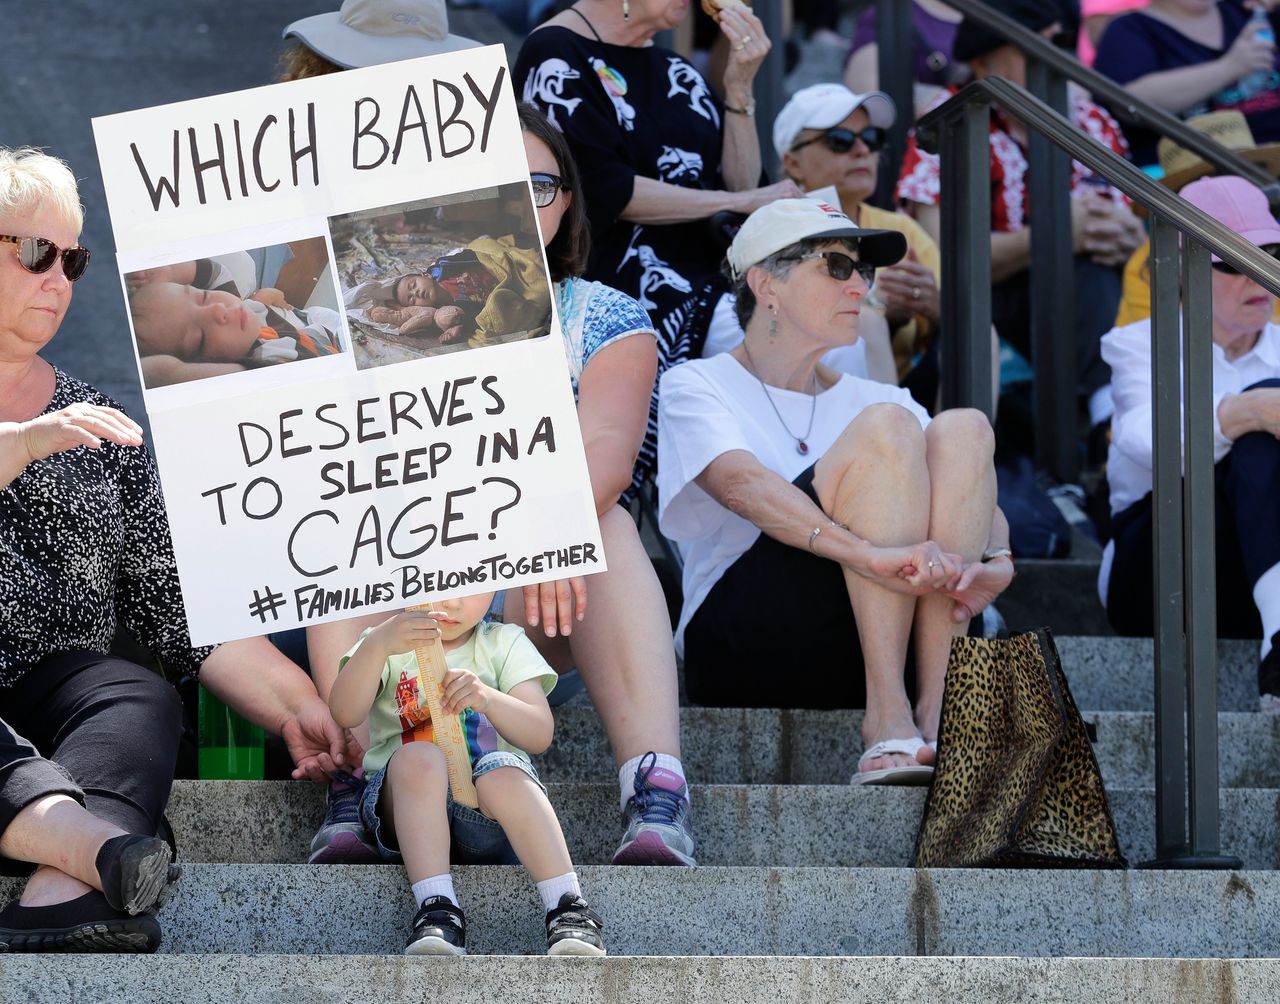 Demonstratie tegen Trumps zero tolerance-immigratiebeleid in Olympia, hoofdstad van de staat Washington. ‘Welke baby verdient het in een kooi te moeten slapen?’, staat op het bord.